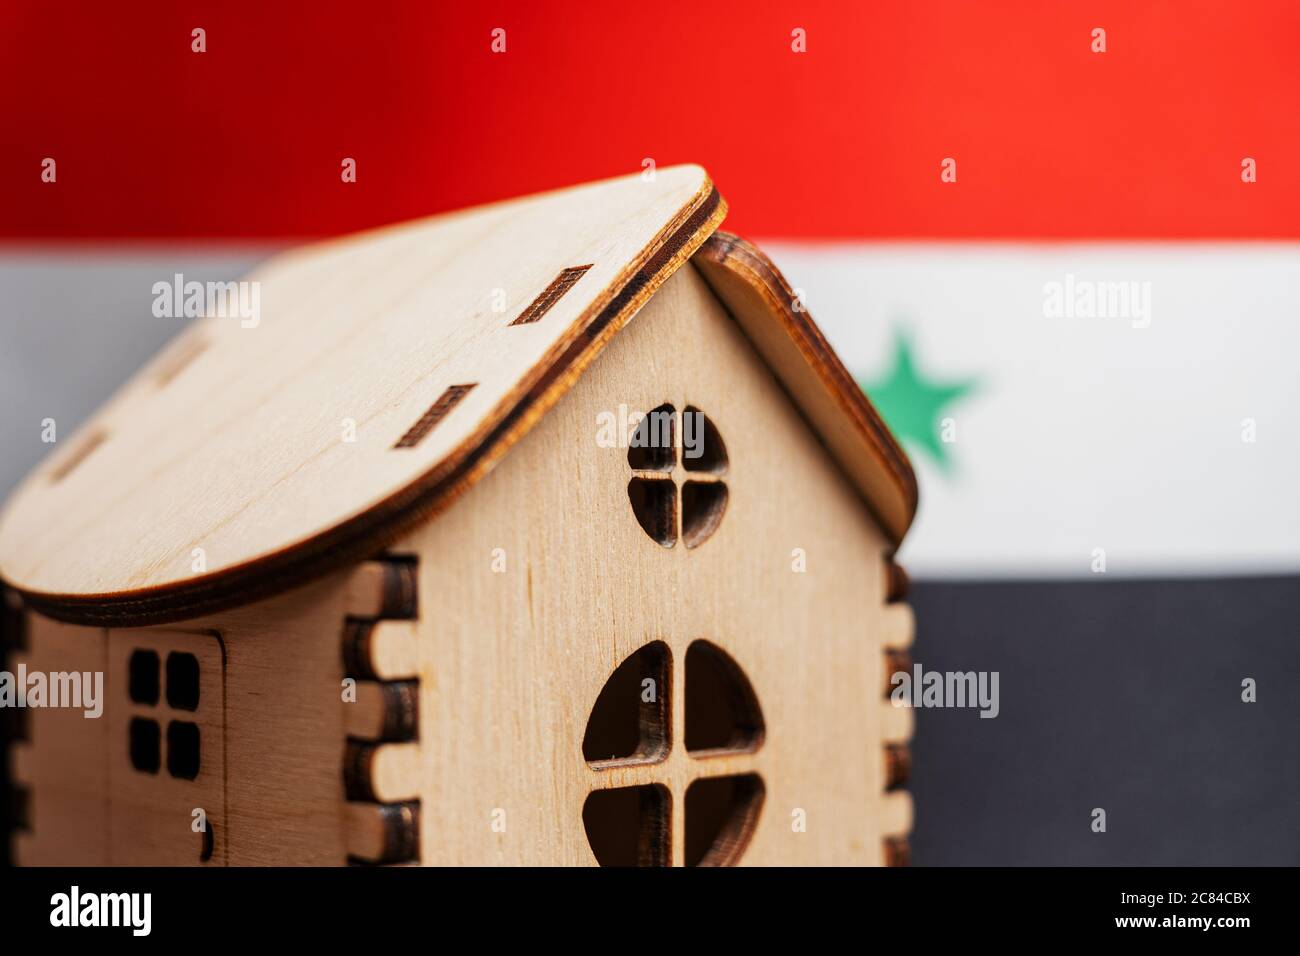 Petite maison en bois, drapeau syrien sur fond. Concept immobilier, attention douce Banque D'Images